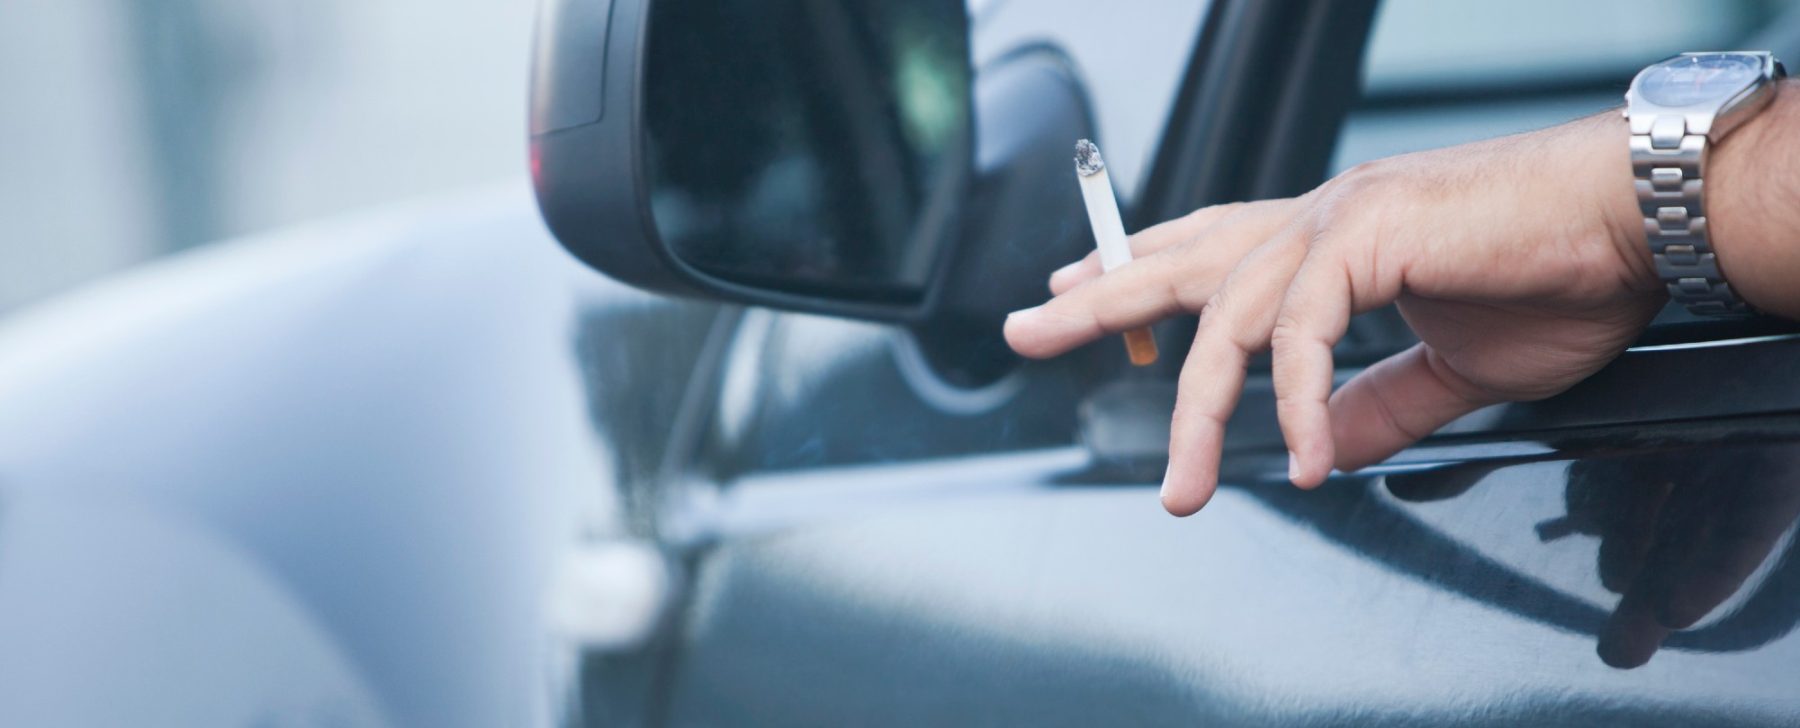 multa fumar en el coche